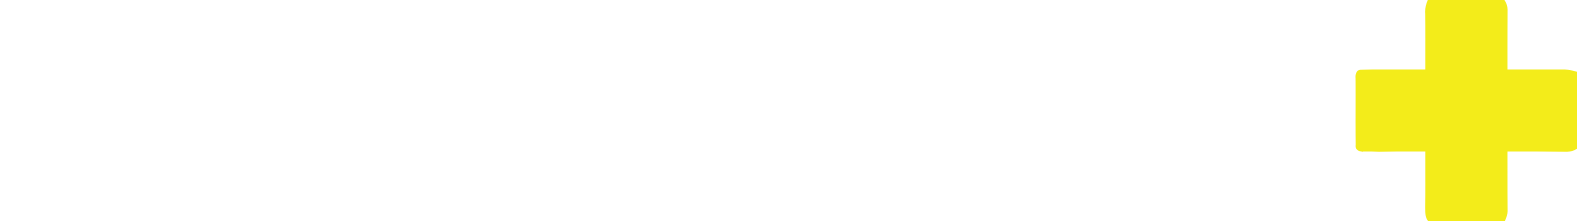 Dis-Chem Pharmacies logo grand pour les fonds sombres (PNG transparent)